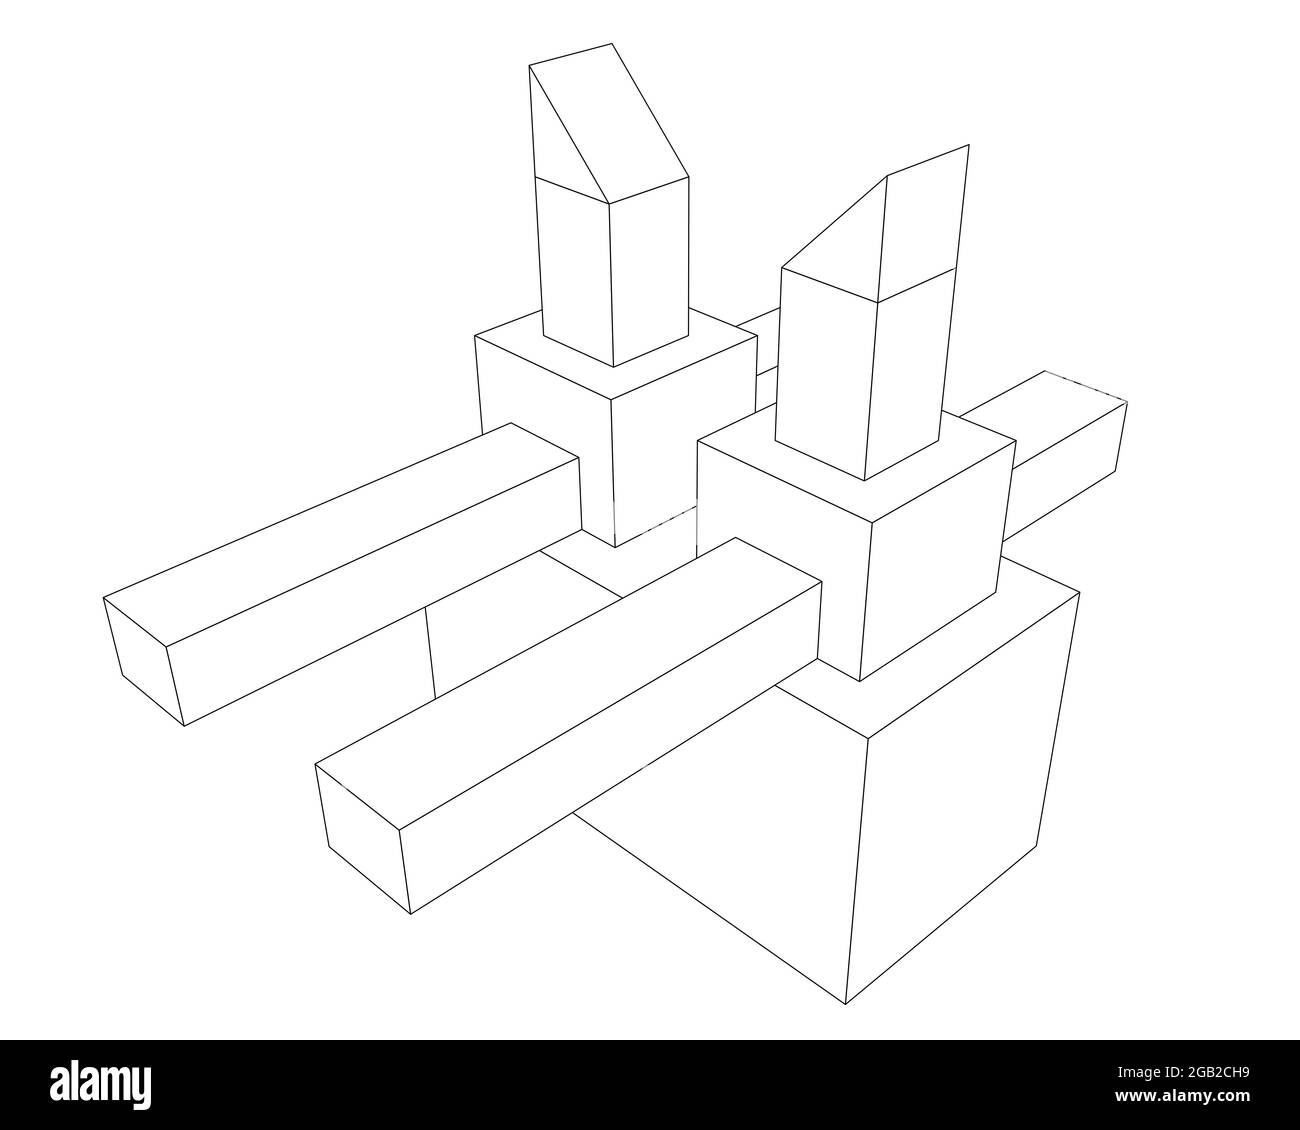 blocchi da costruzione con contorno bianco e nero per bambini, struttura astratta da forme geometriche 3d sovrapposte. illustrazione della vista prospettica Foto Stock